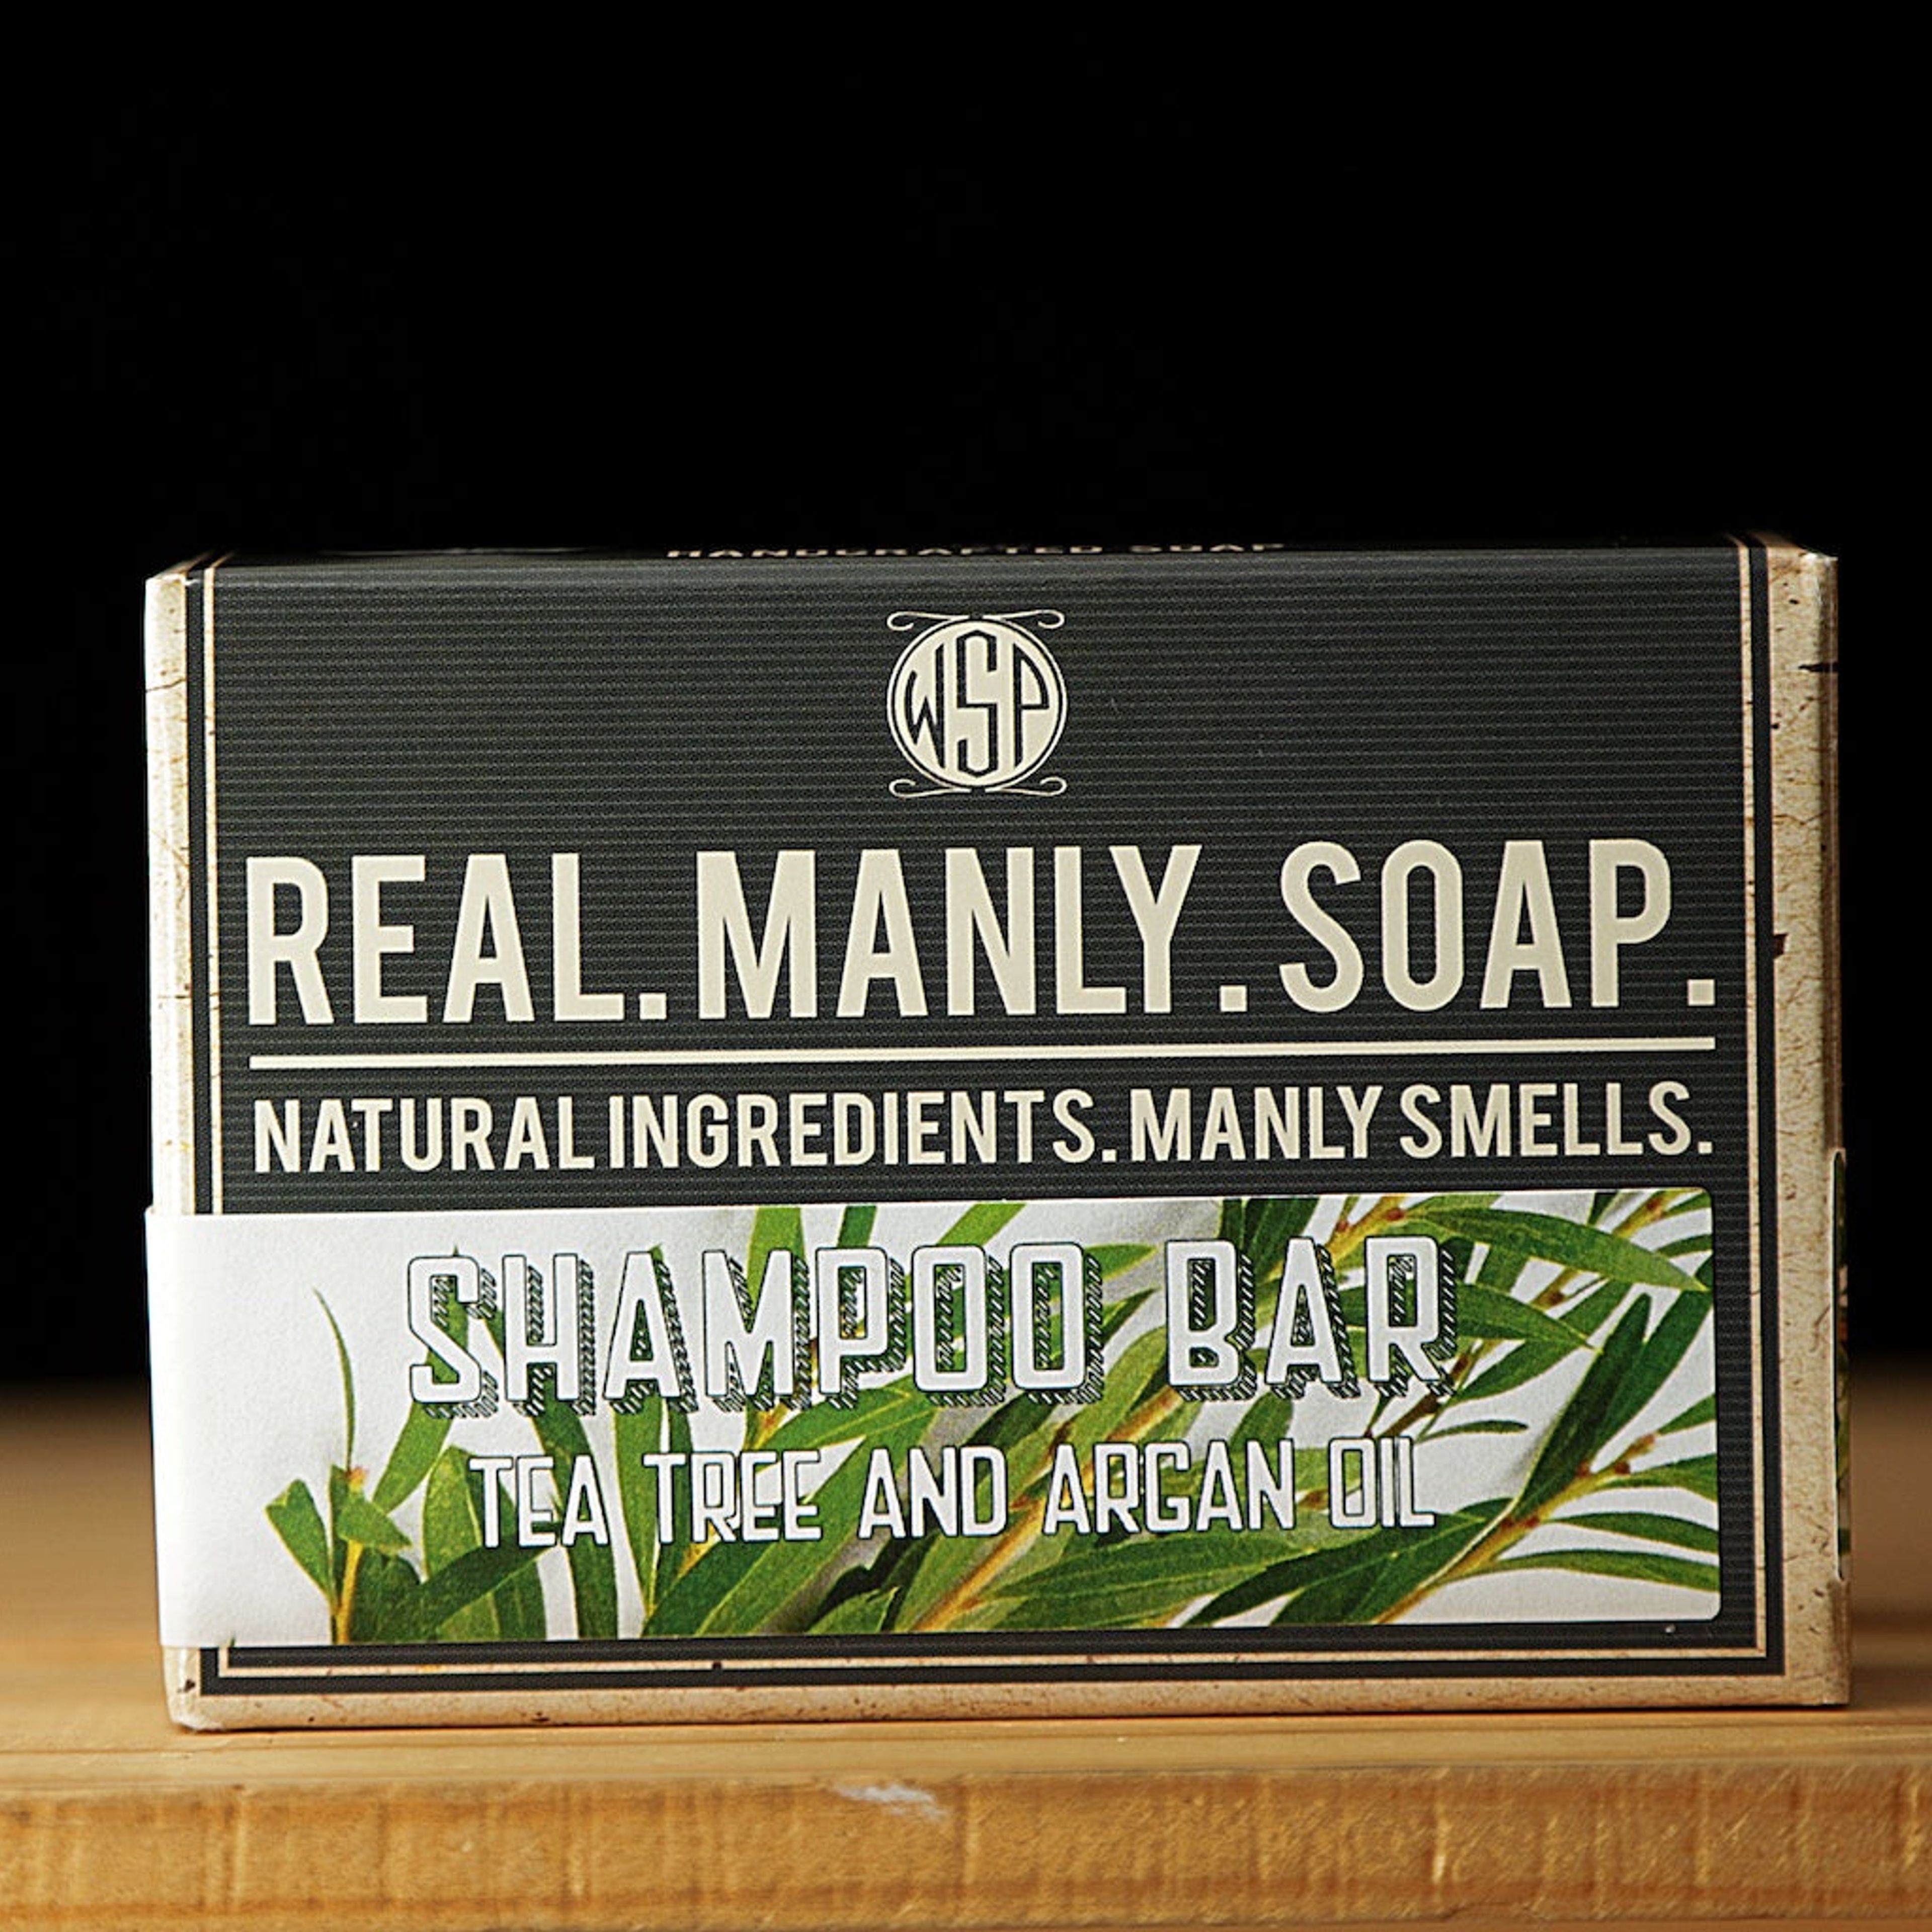 Shampoo & Beard Wash Bar 4.5 oz 100% Vegan & Natural